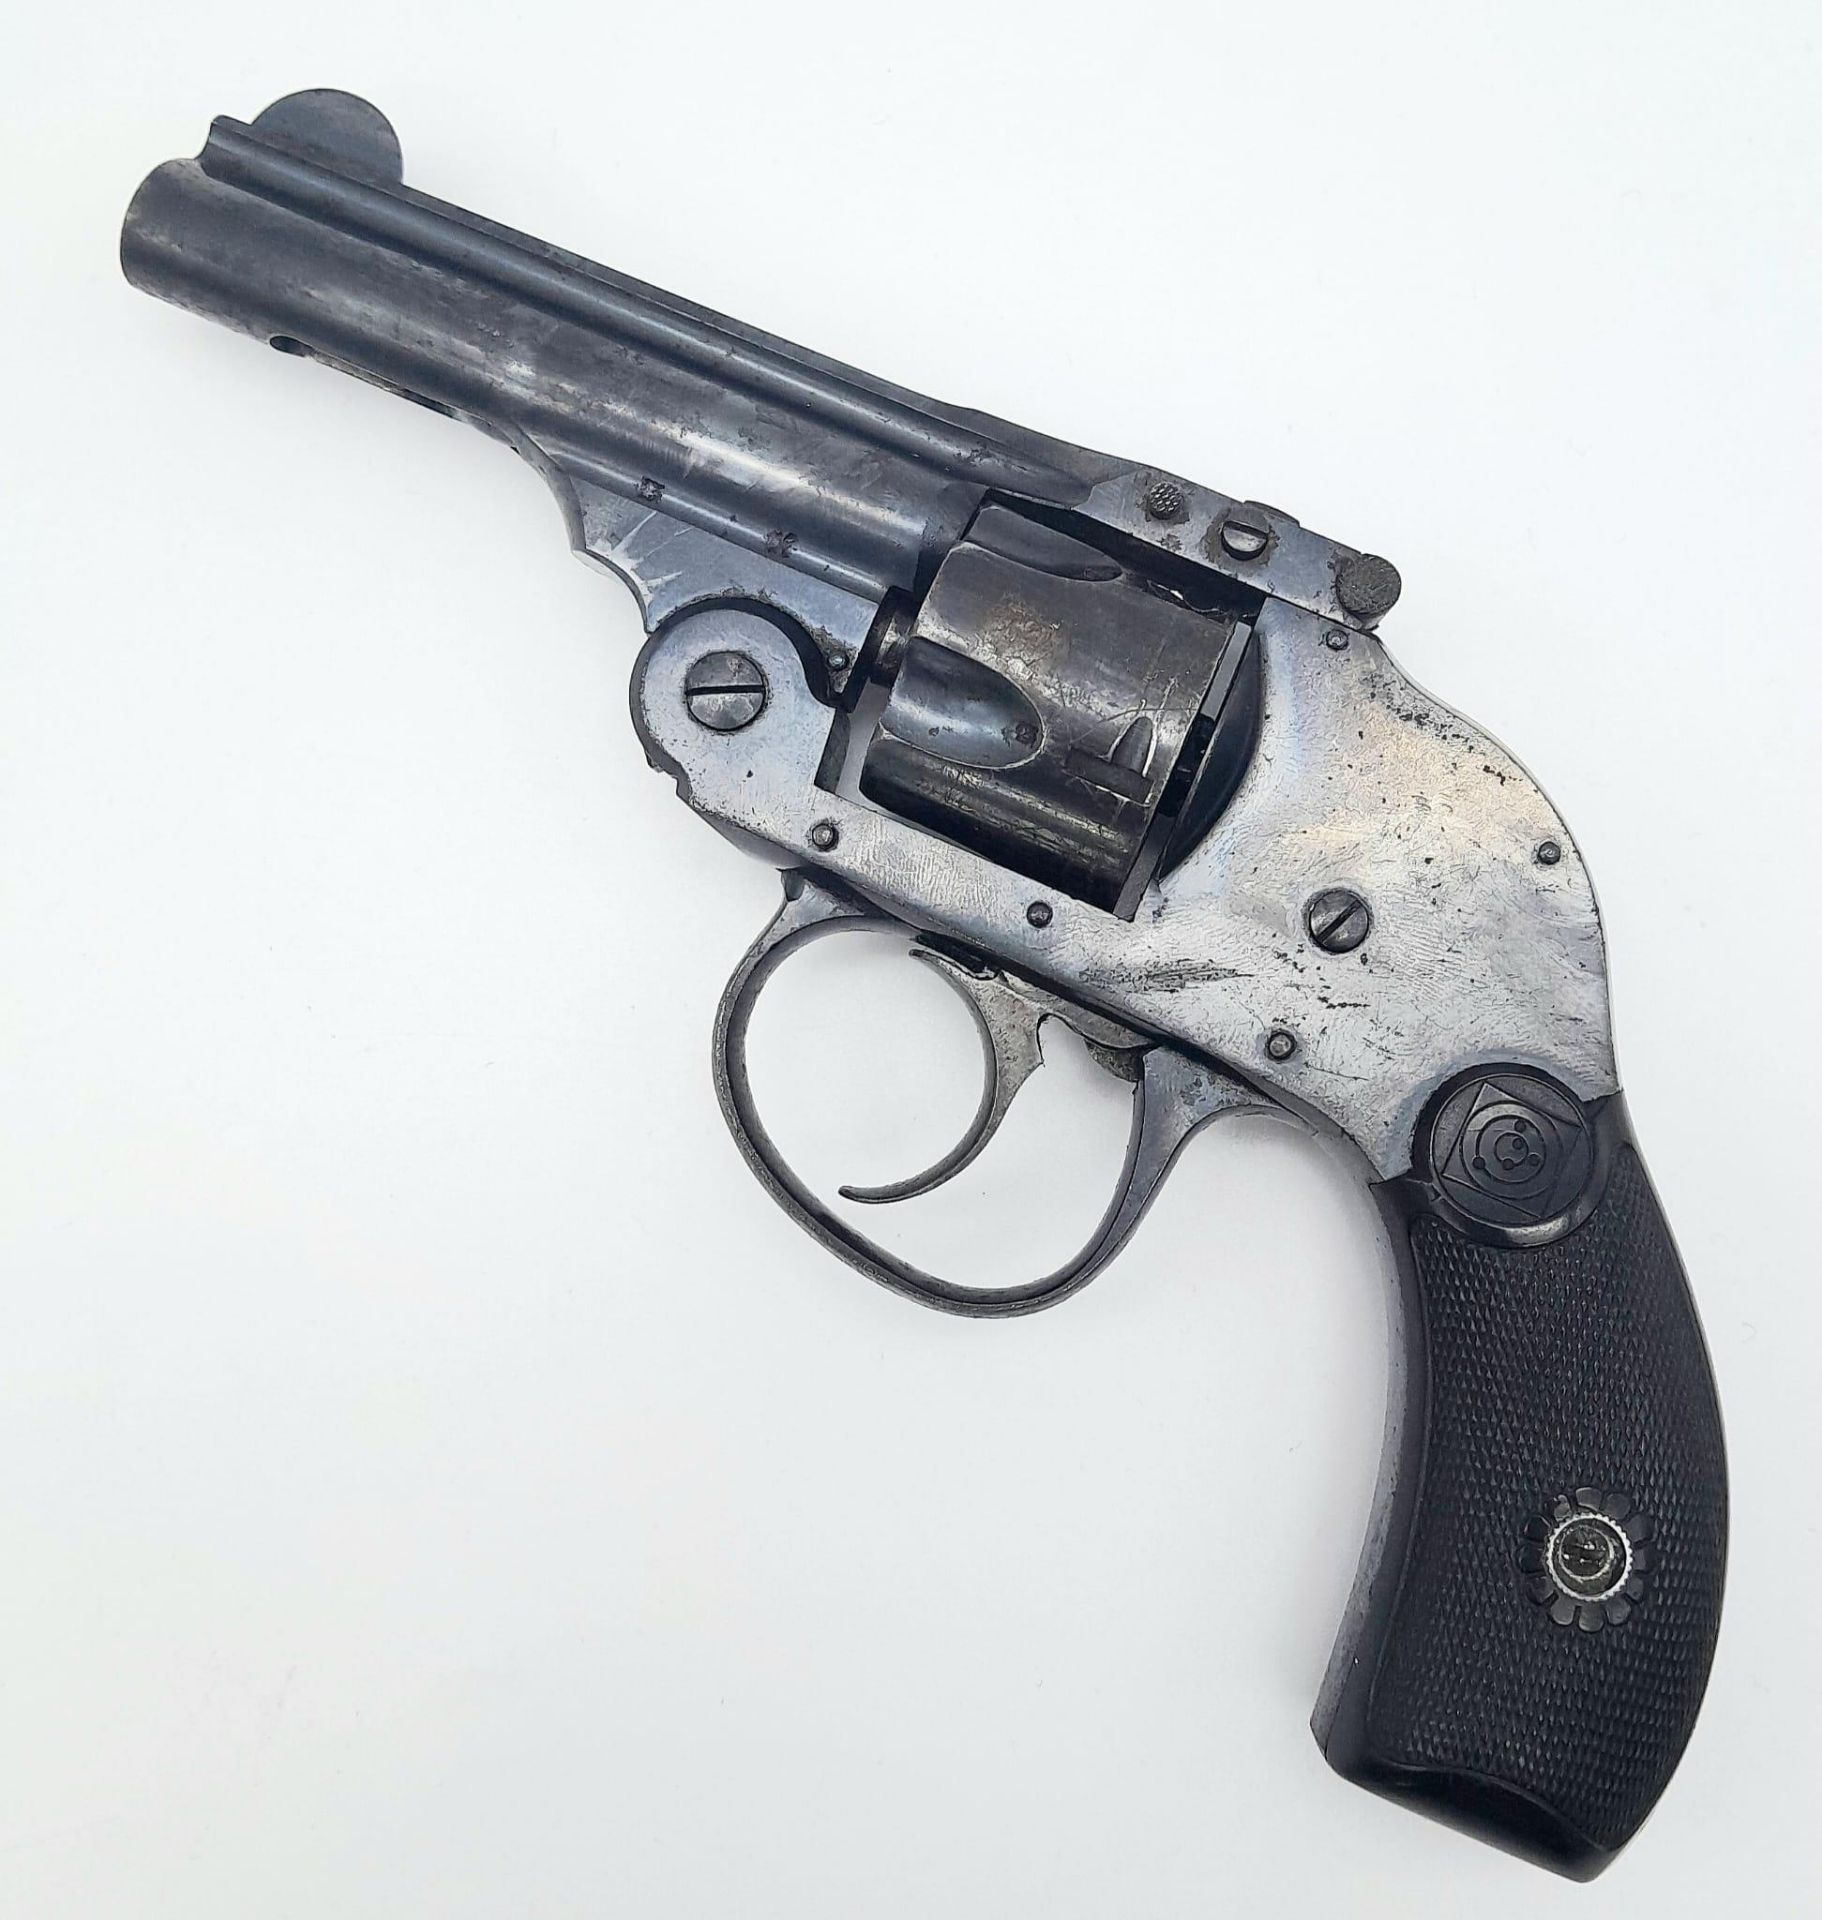 A Deactivated Harrington and Richardson .32 Calibre Revolver. This vintage USA made pistol has an EU